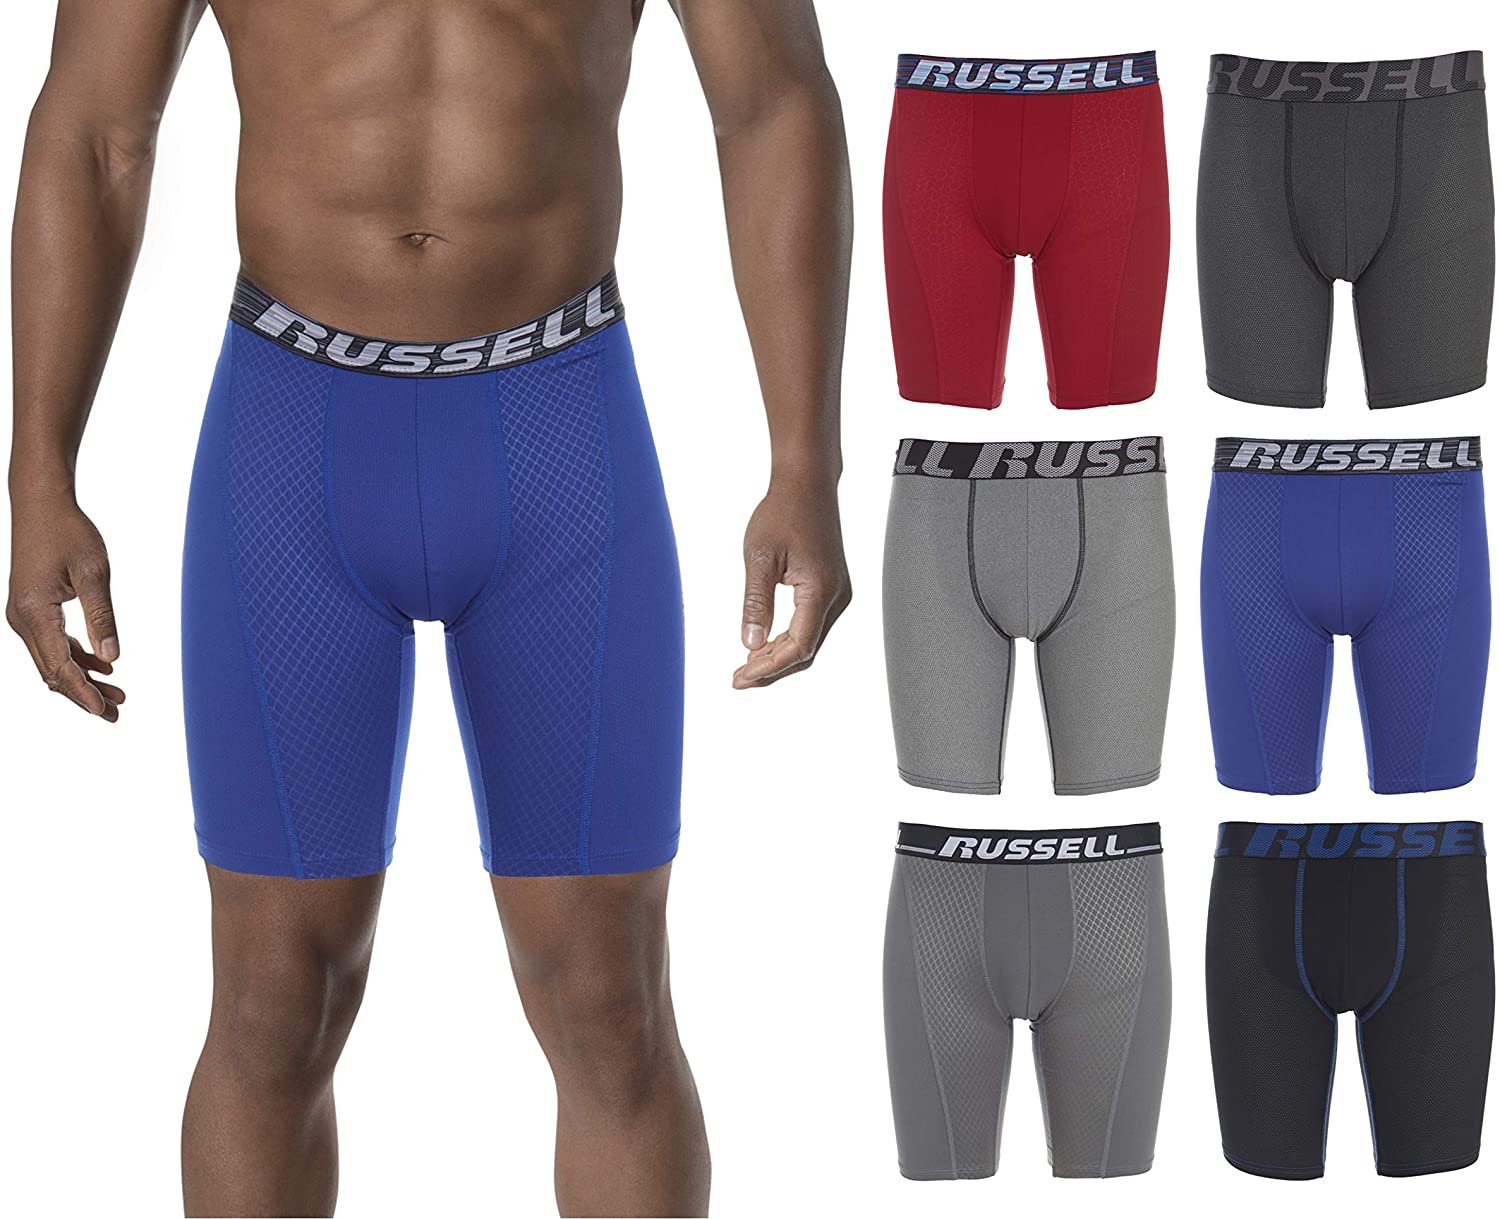 Sport Mesh Collection, Sports Underwear For Men